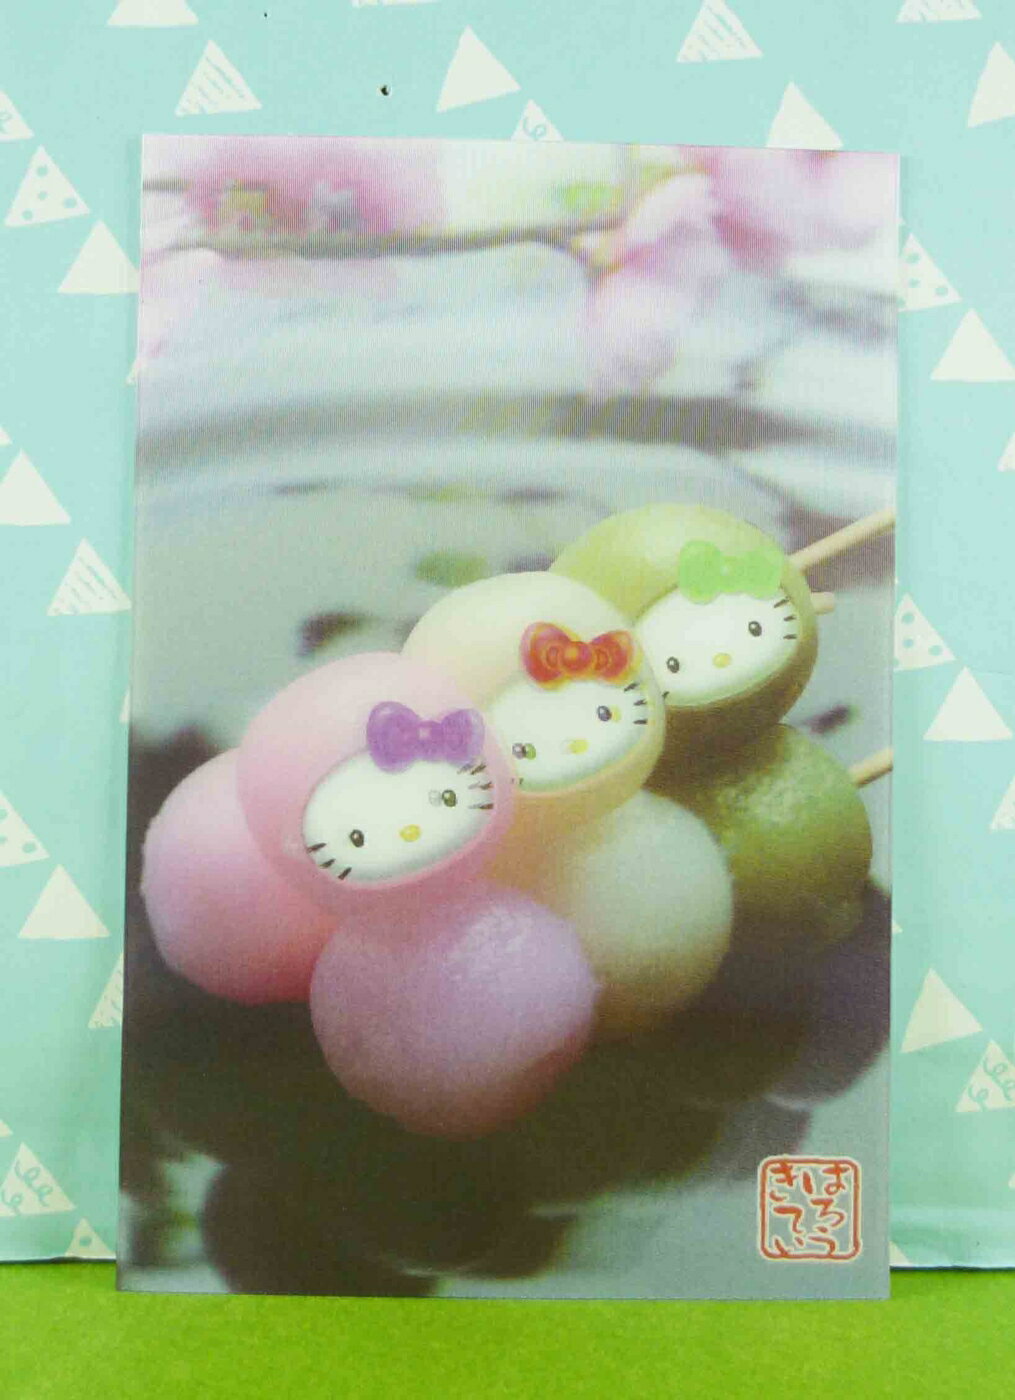 【震撼精品百貨】Hello Kitty 凱蒂貓 明信片-三色丸子 震撼日式精品百貨